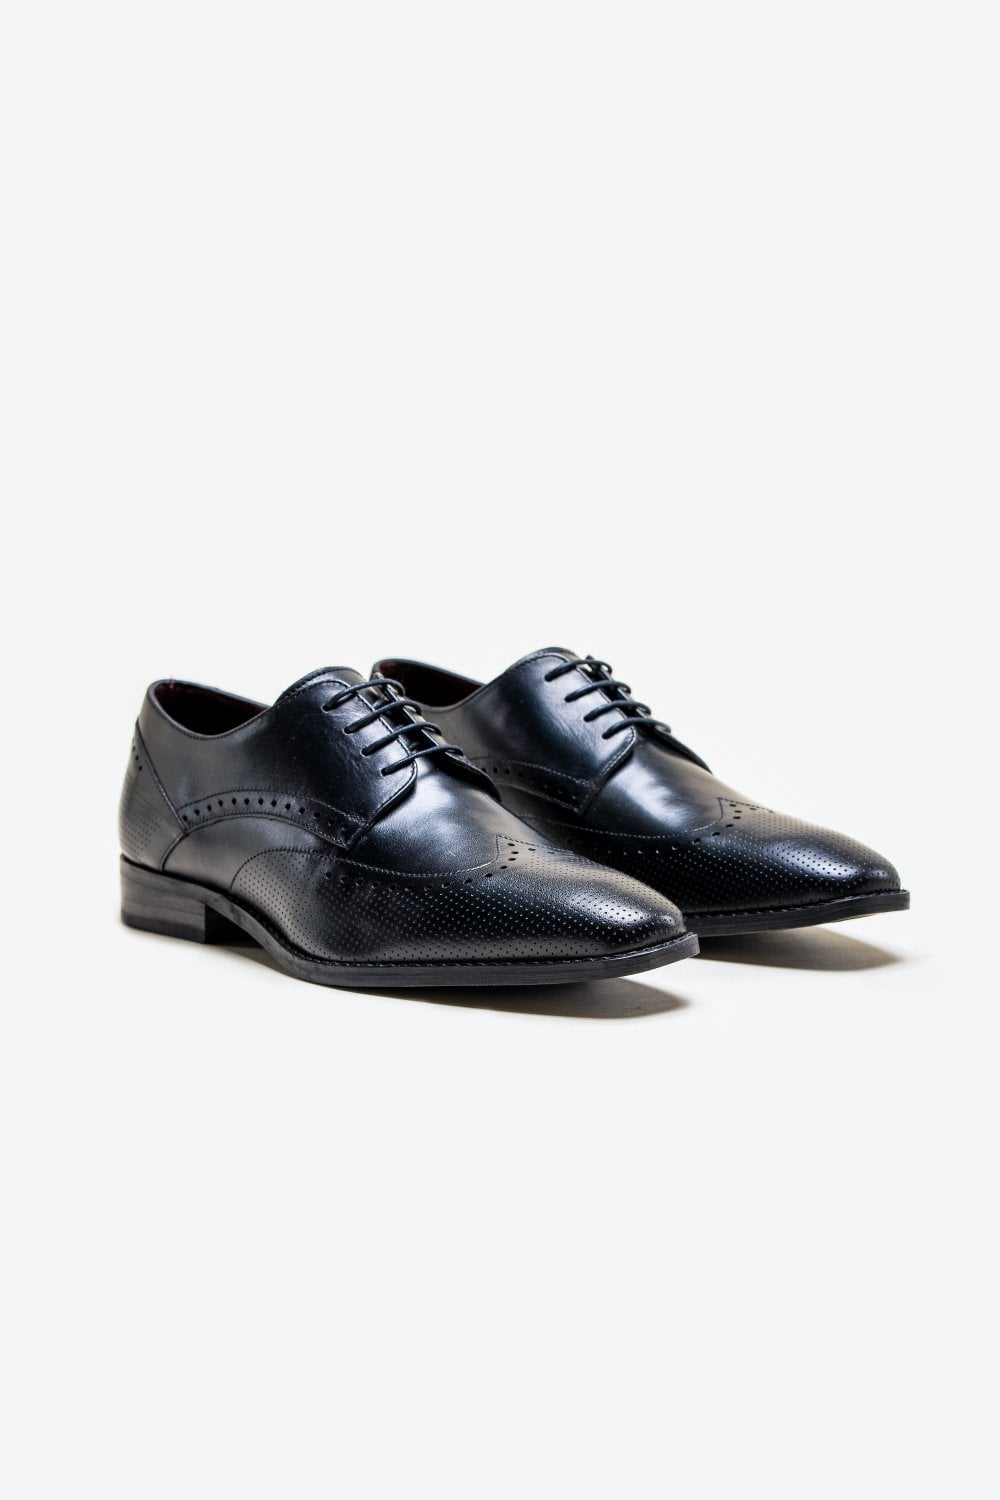 Cavani Lisbon Chaussures noires - Bout d'aile Brogue